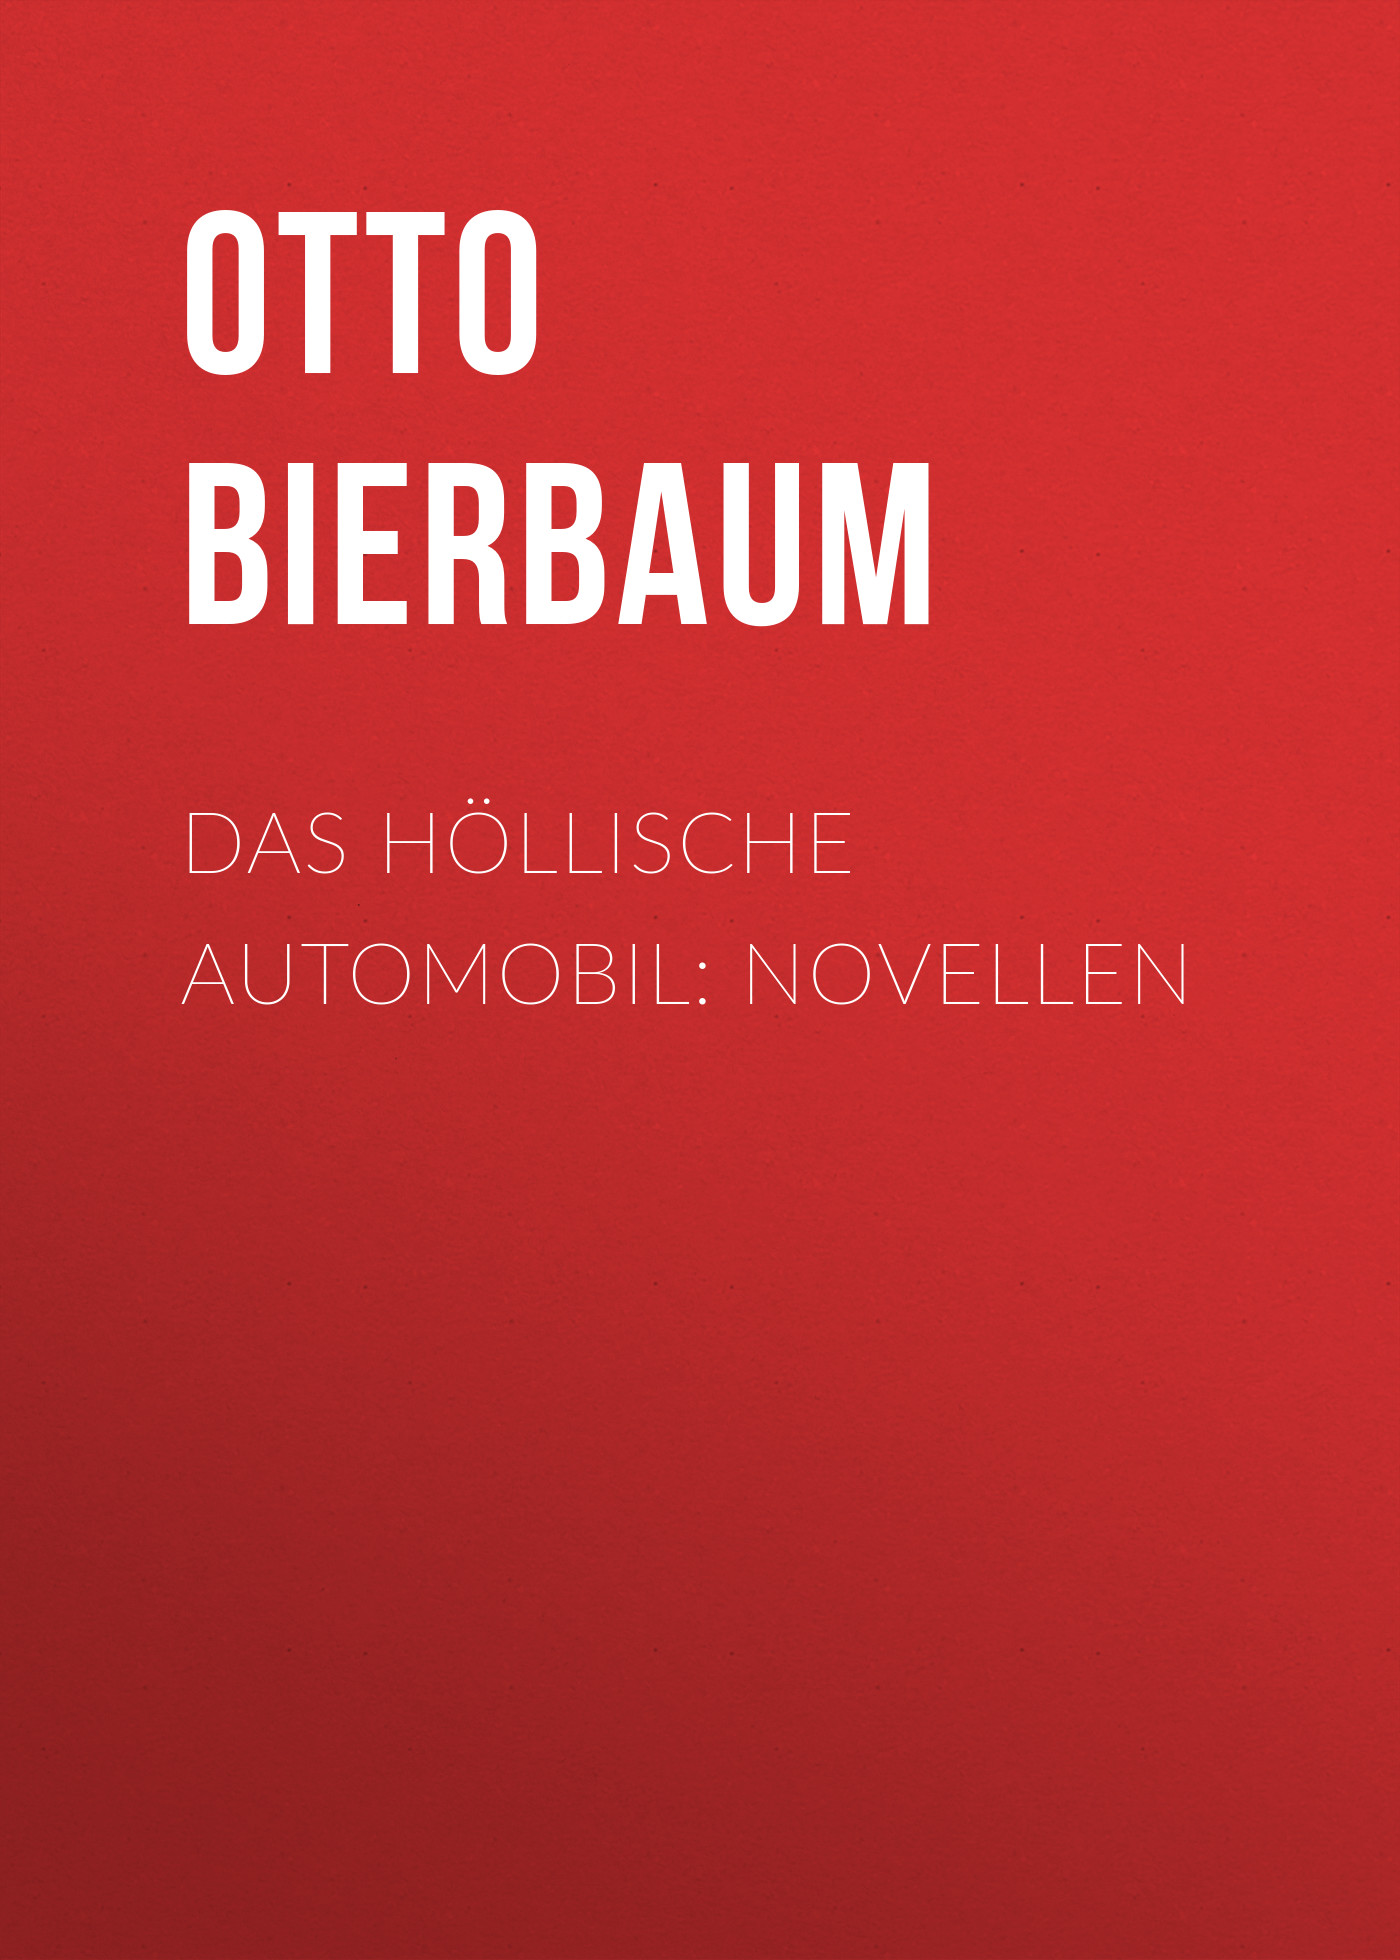 Книга Das höllische Automobil: Novellen из серии , созданная Otto Bierbaum, может относится к жанру Зарубежная старинная литература, Зарубежная классика. Стоимость электронной книги Das höllische Automobil: Novellen с идентификатором 24178436 составляет 0 руб.